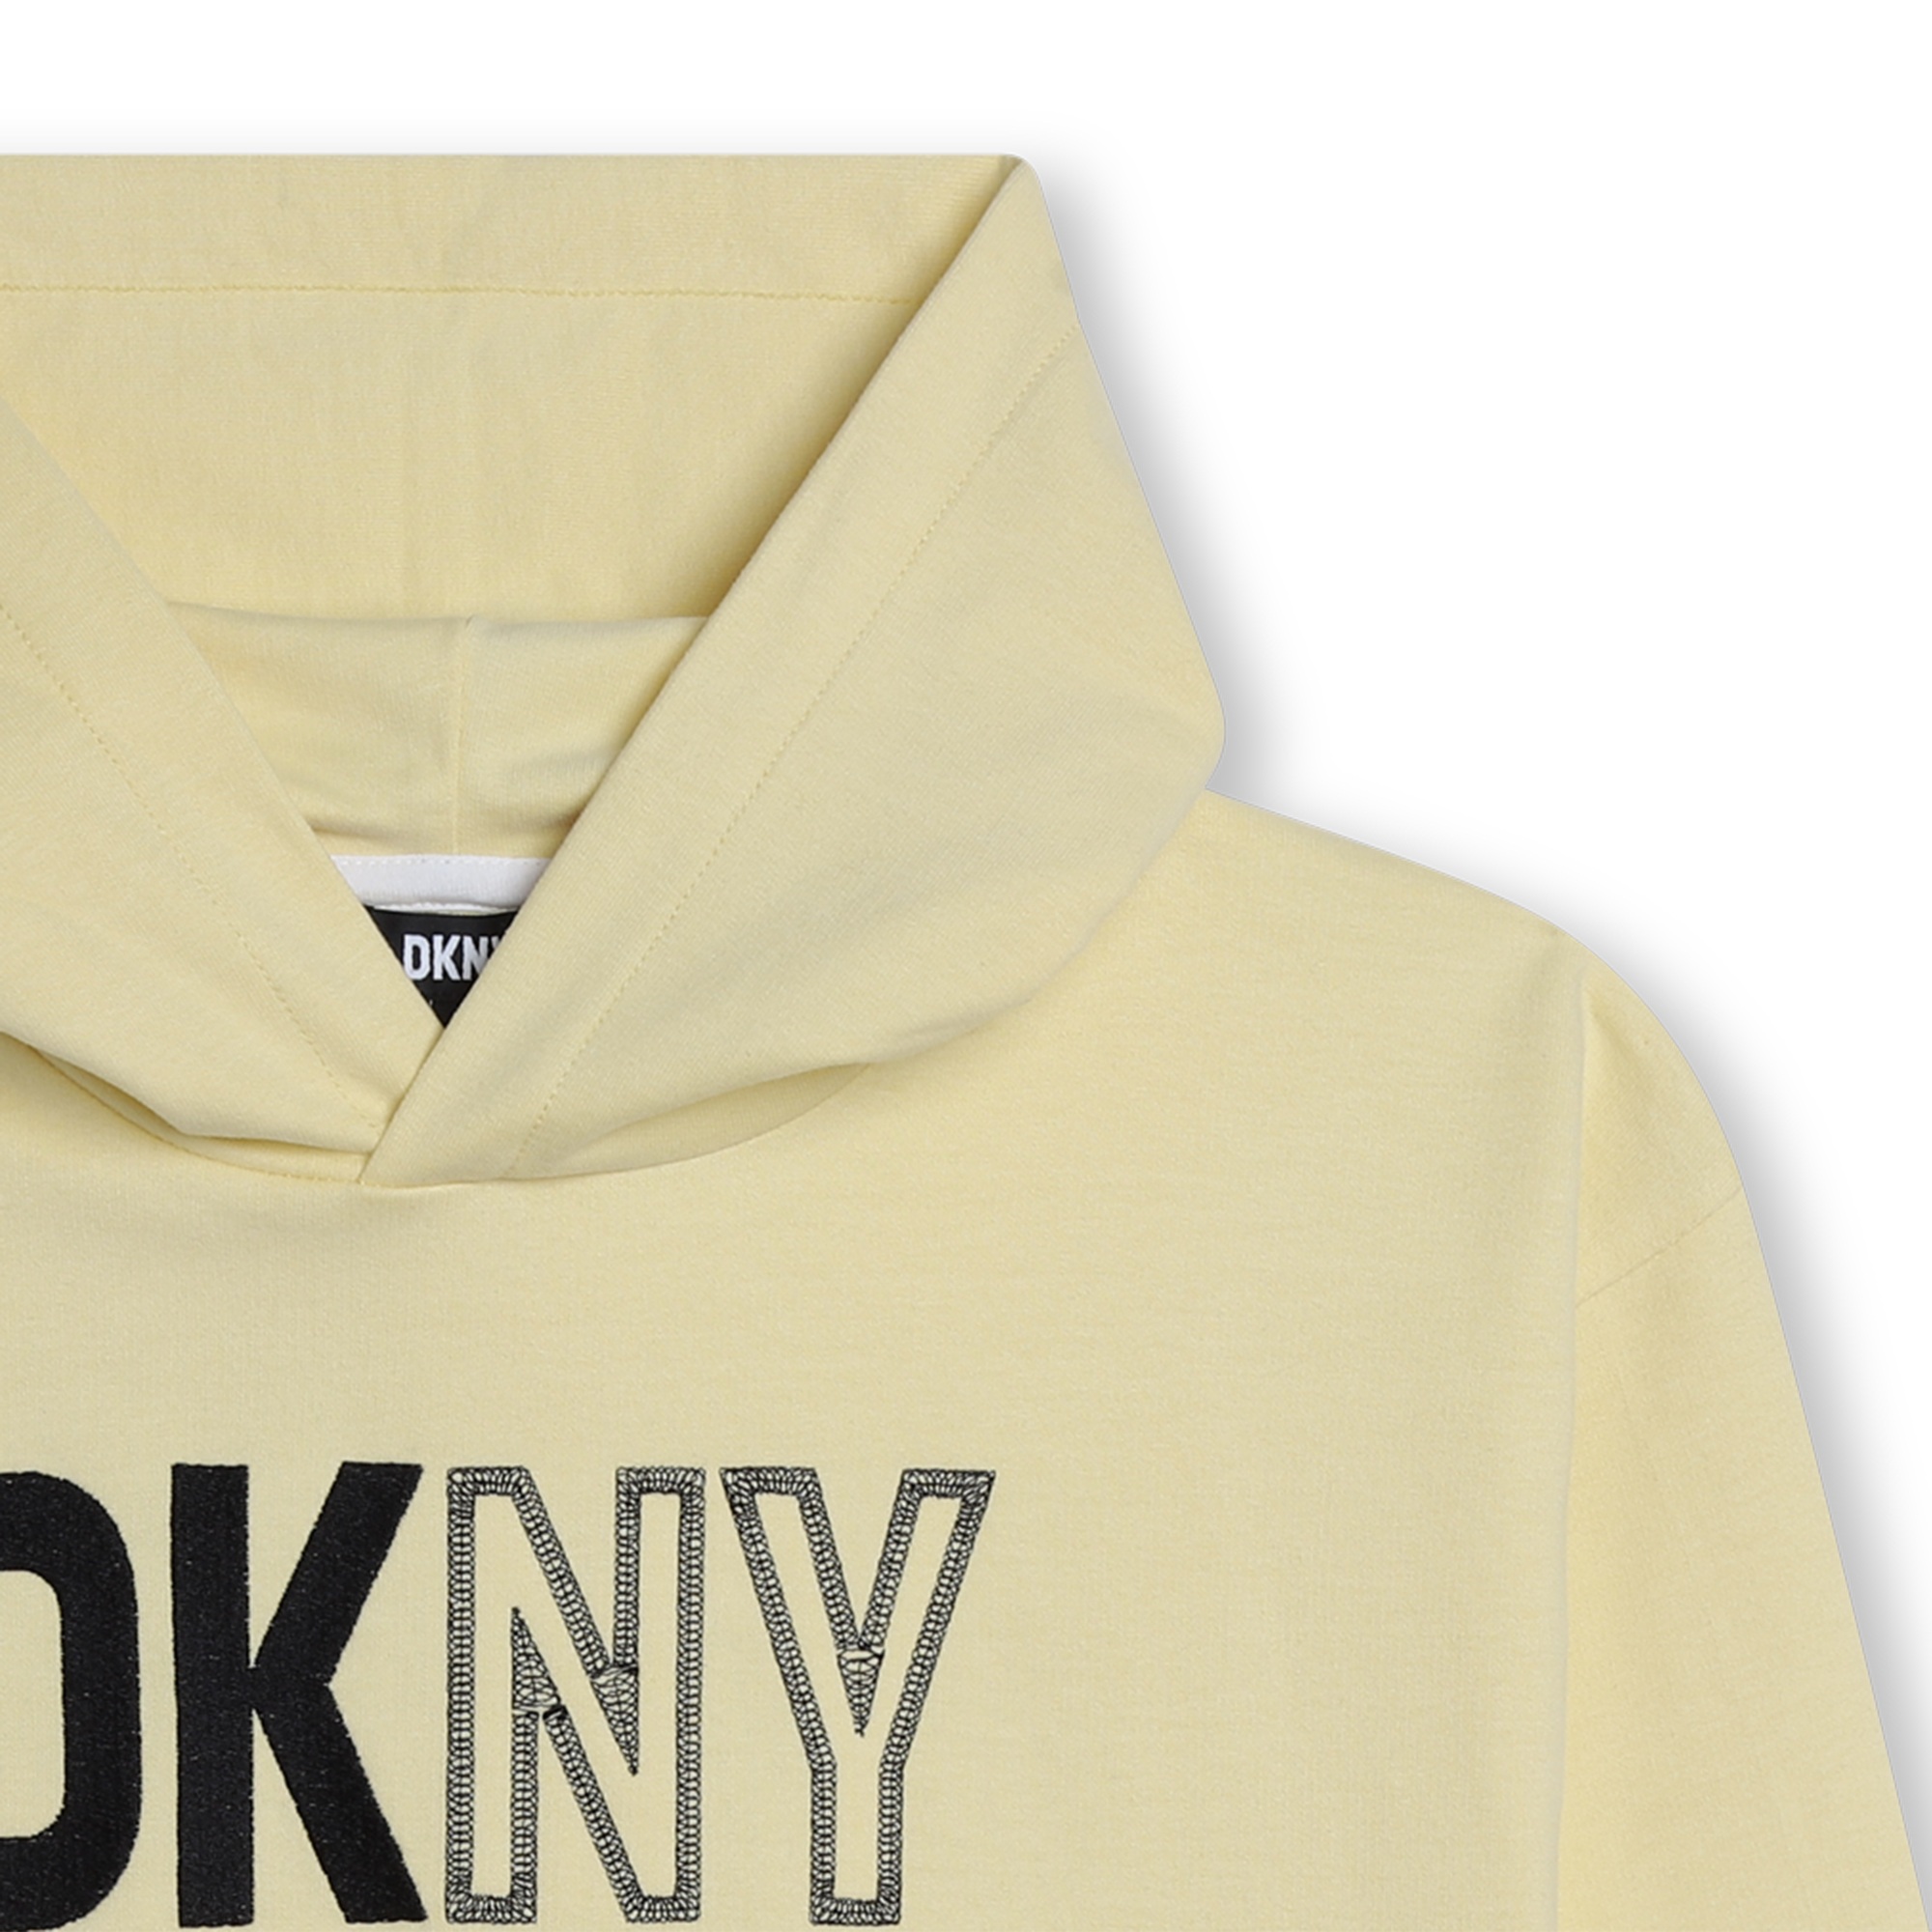 Unisex fleece sweatshirt DKNY for UNISEX